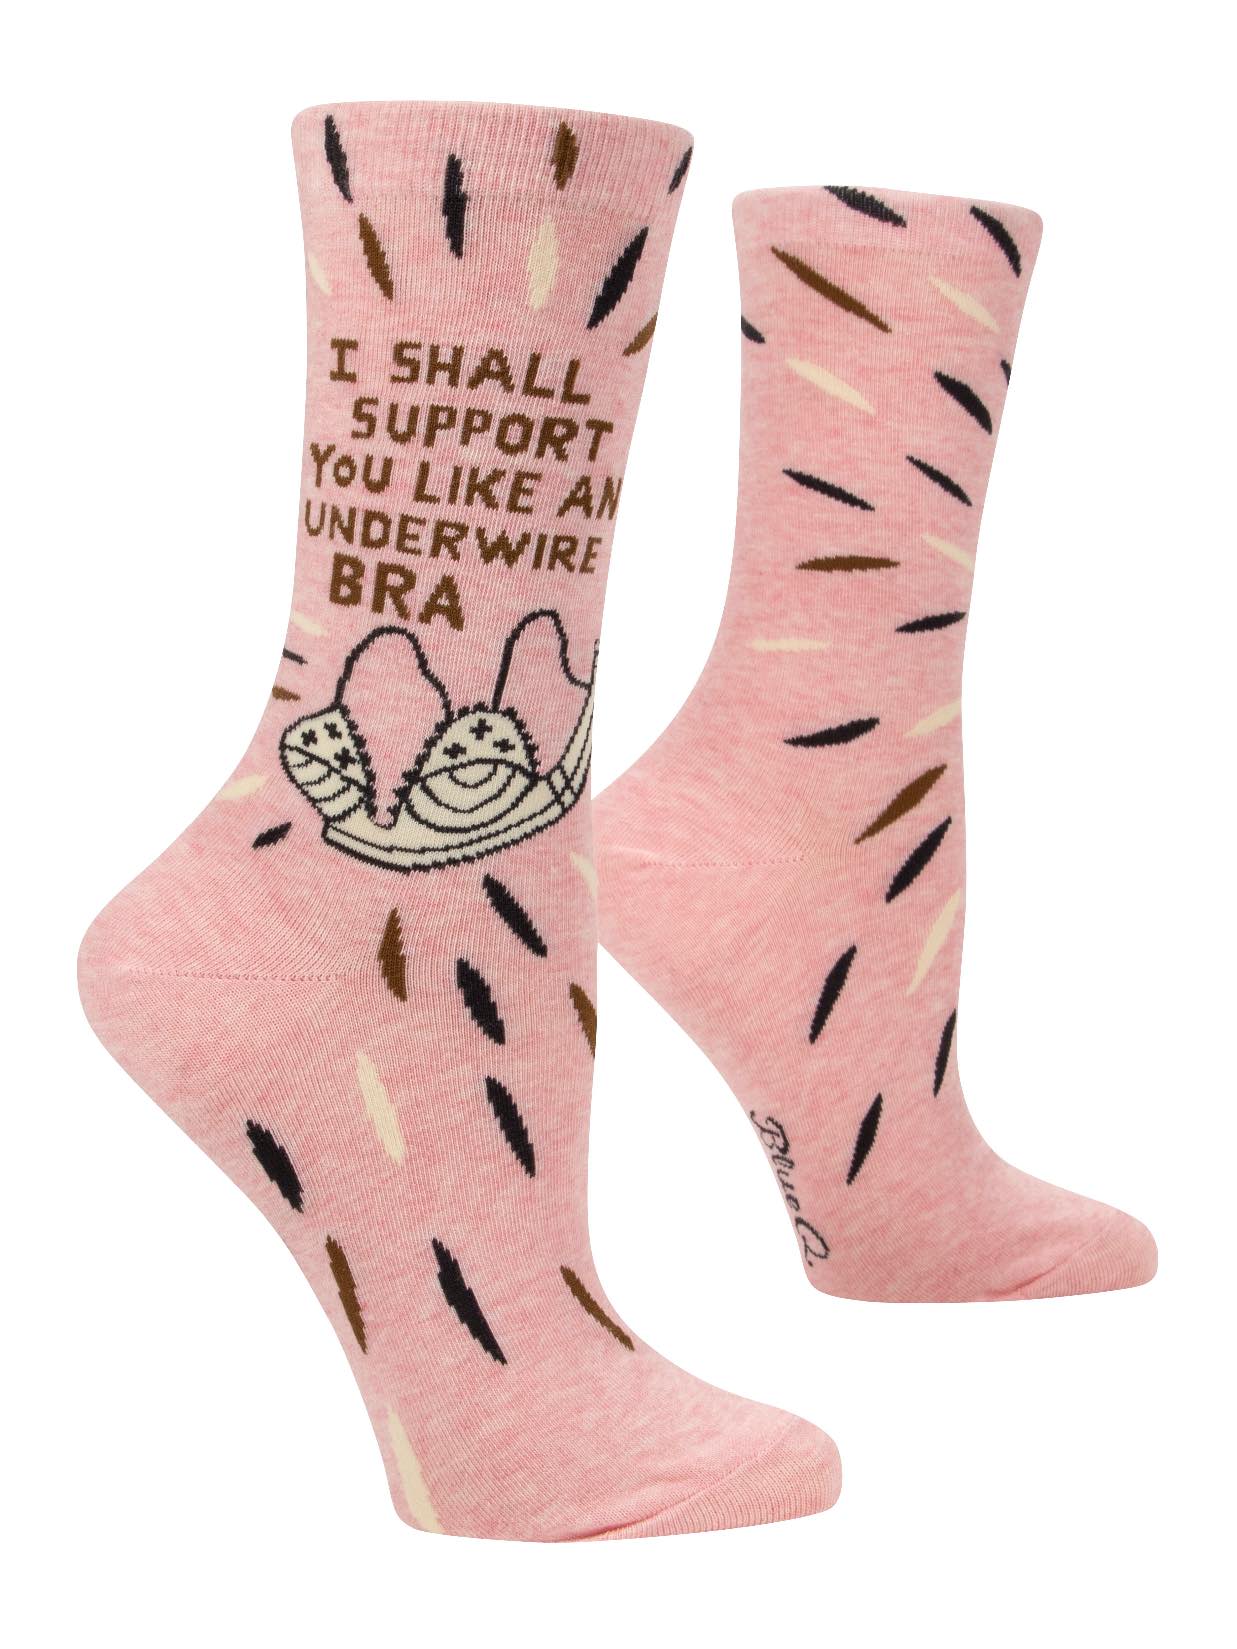 Socks Women: Support You Like Underwire Bra